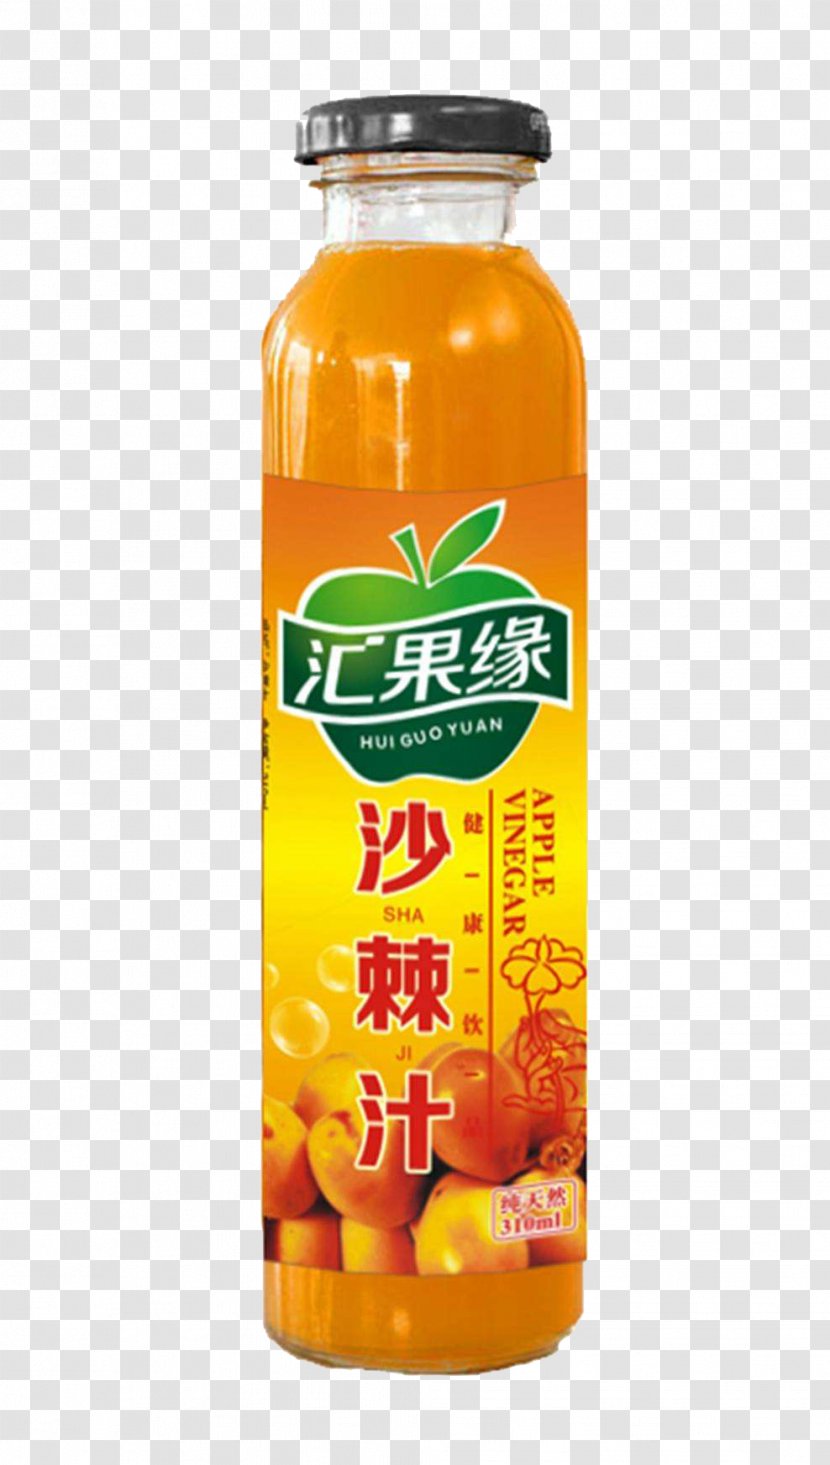 Apple Cider Vinegar Juice Orange Drink - Flavor - Material Transparent PNG